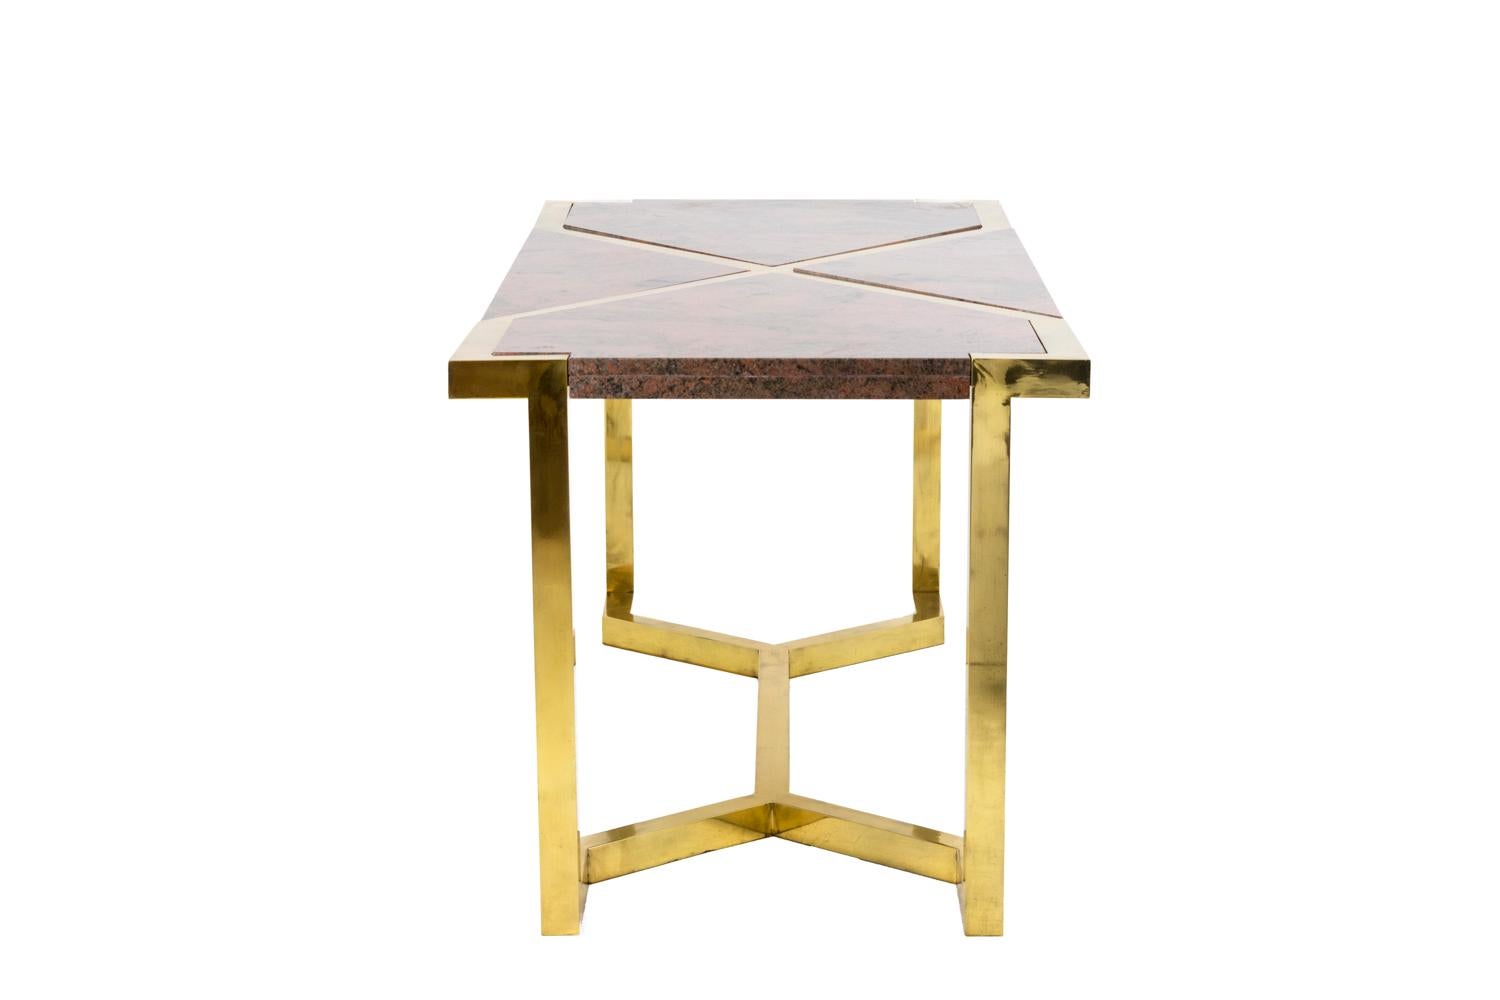 Tisch aus vergoldetem Messing und rosa Granit im Stil von Cittone Oggi oder Nucci Valsecchi. Der Tisch steht auf vier quadratischen Beinen, die durch eine X-förmige Bahre miteinander verbunden sind. 
Tablett bestehend aus einem vergoldeten